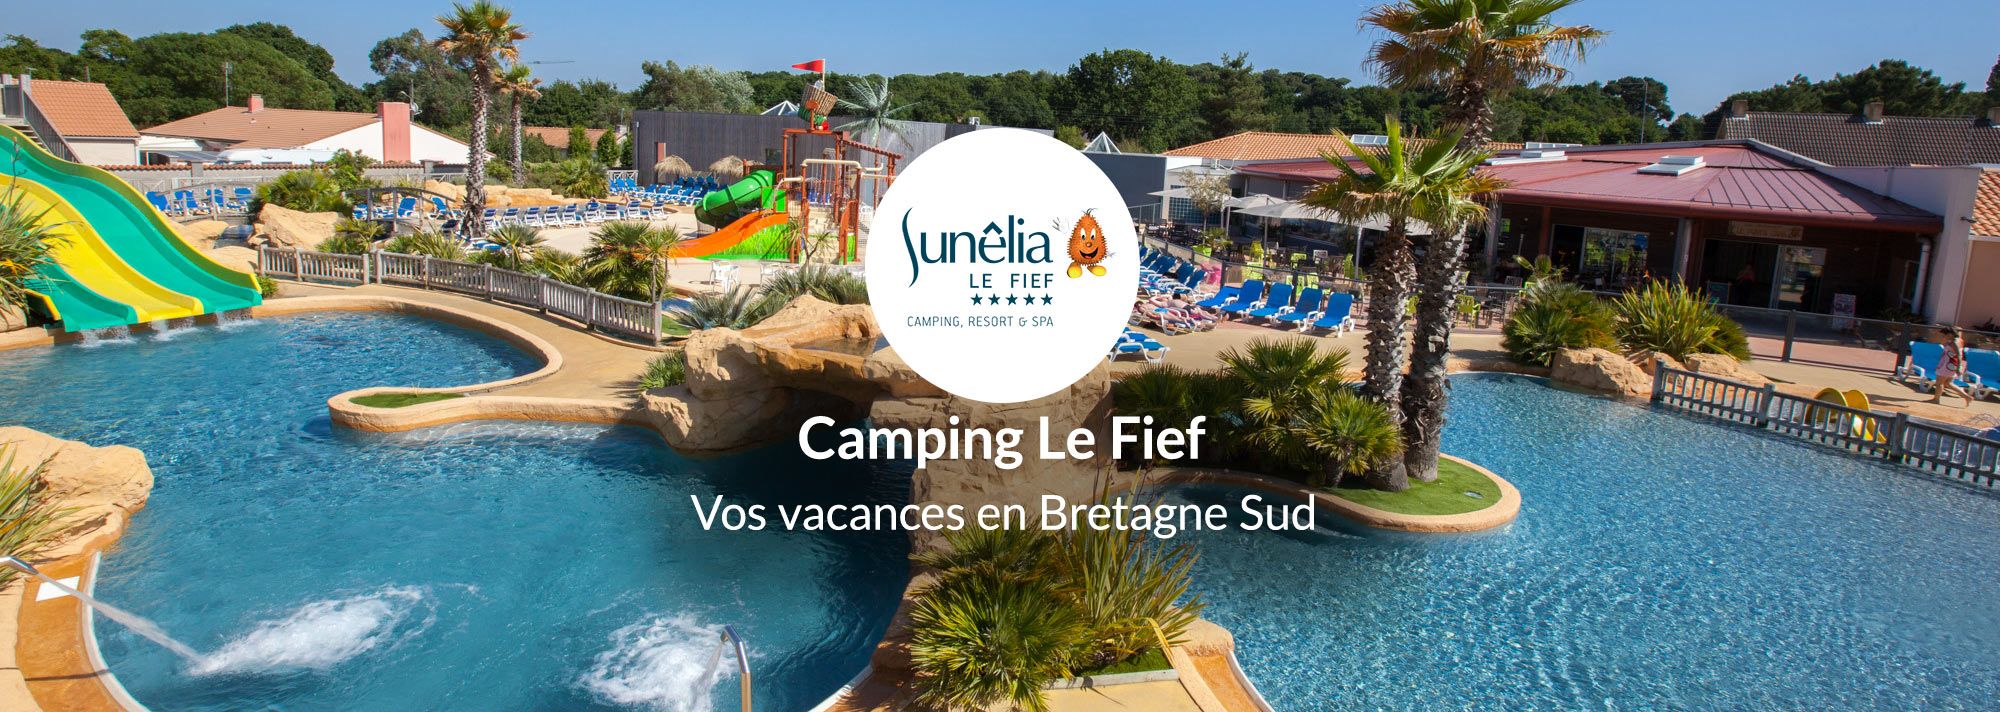 www.camping-le-fief.com